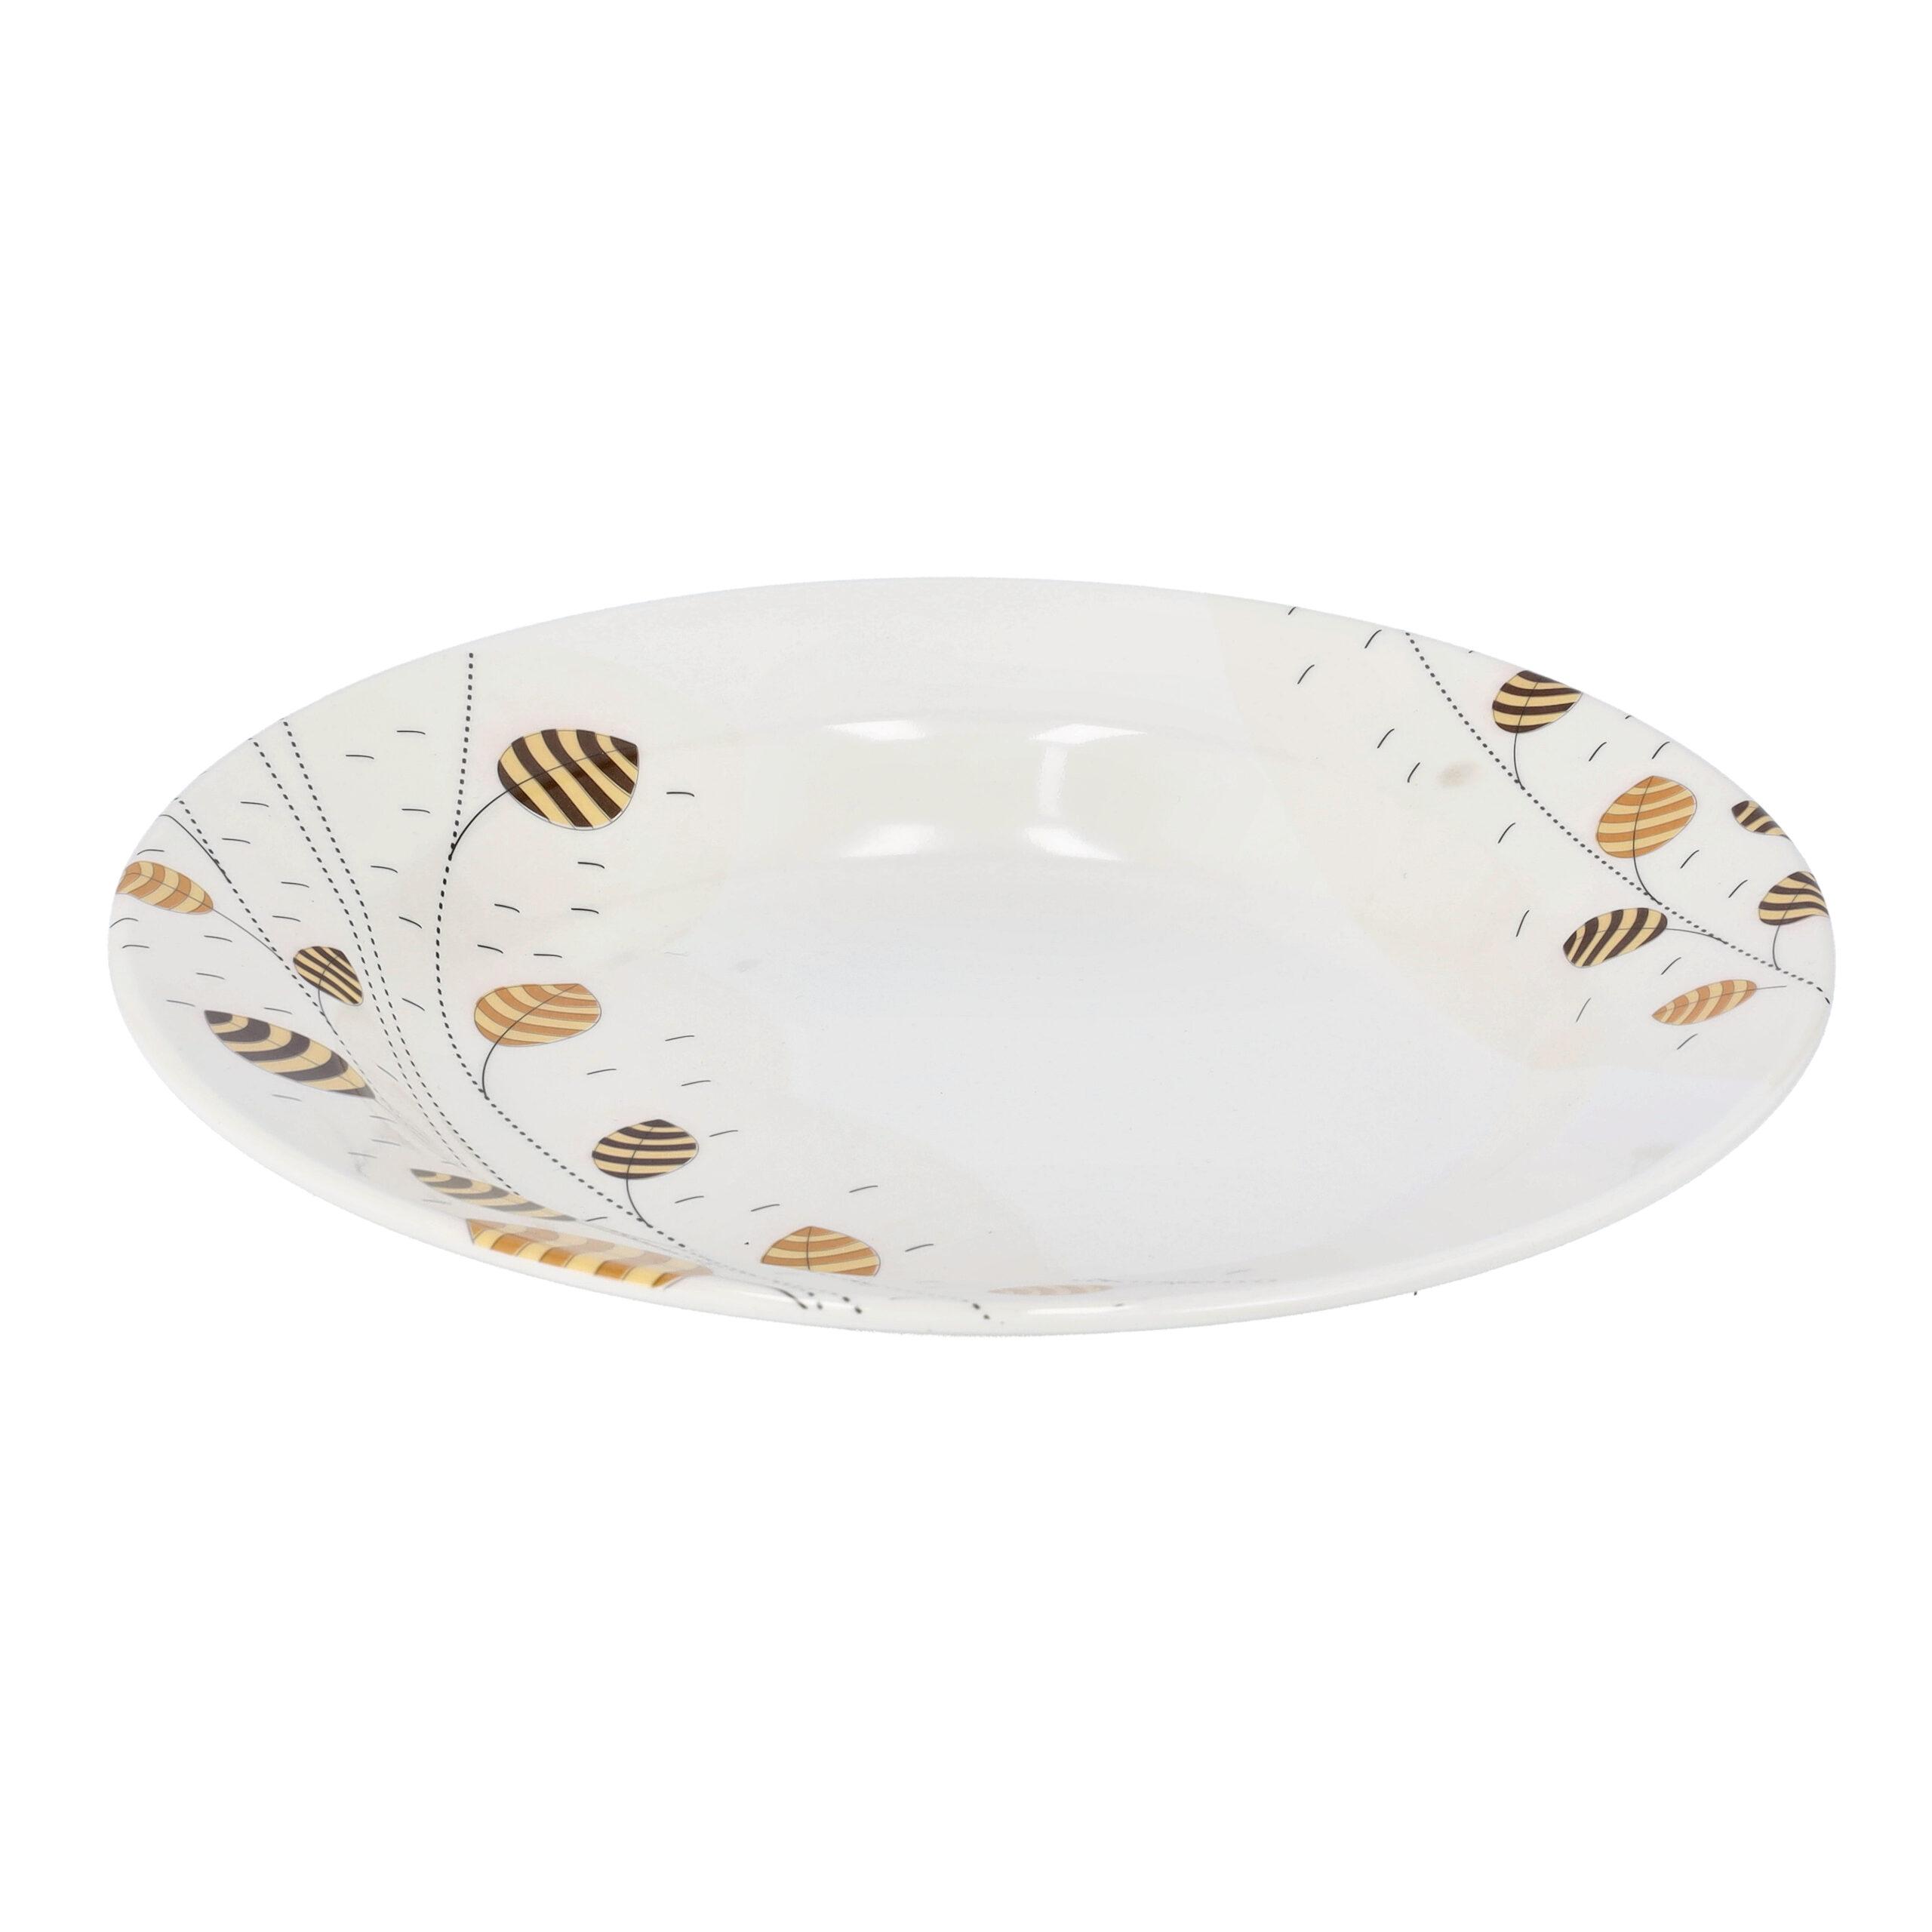 صحن تقديم عميق ميلامين 10 بوصة Royalford - 10" Deep Dinner Plate, Melamine Ware , Plate with Elegant Leaf Design